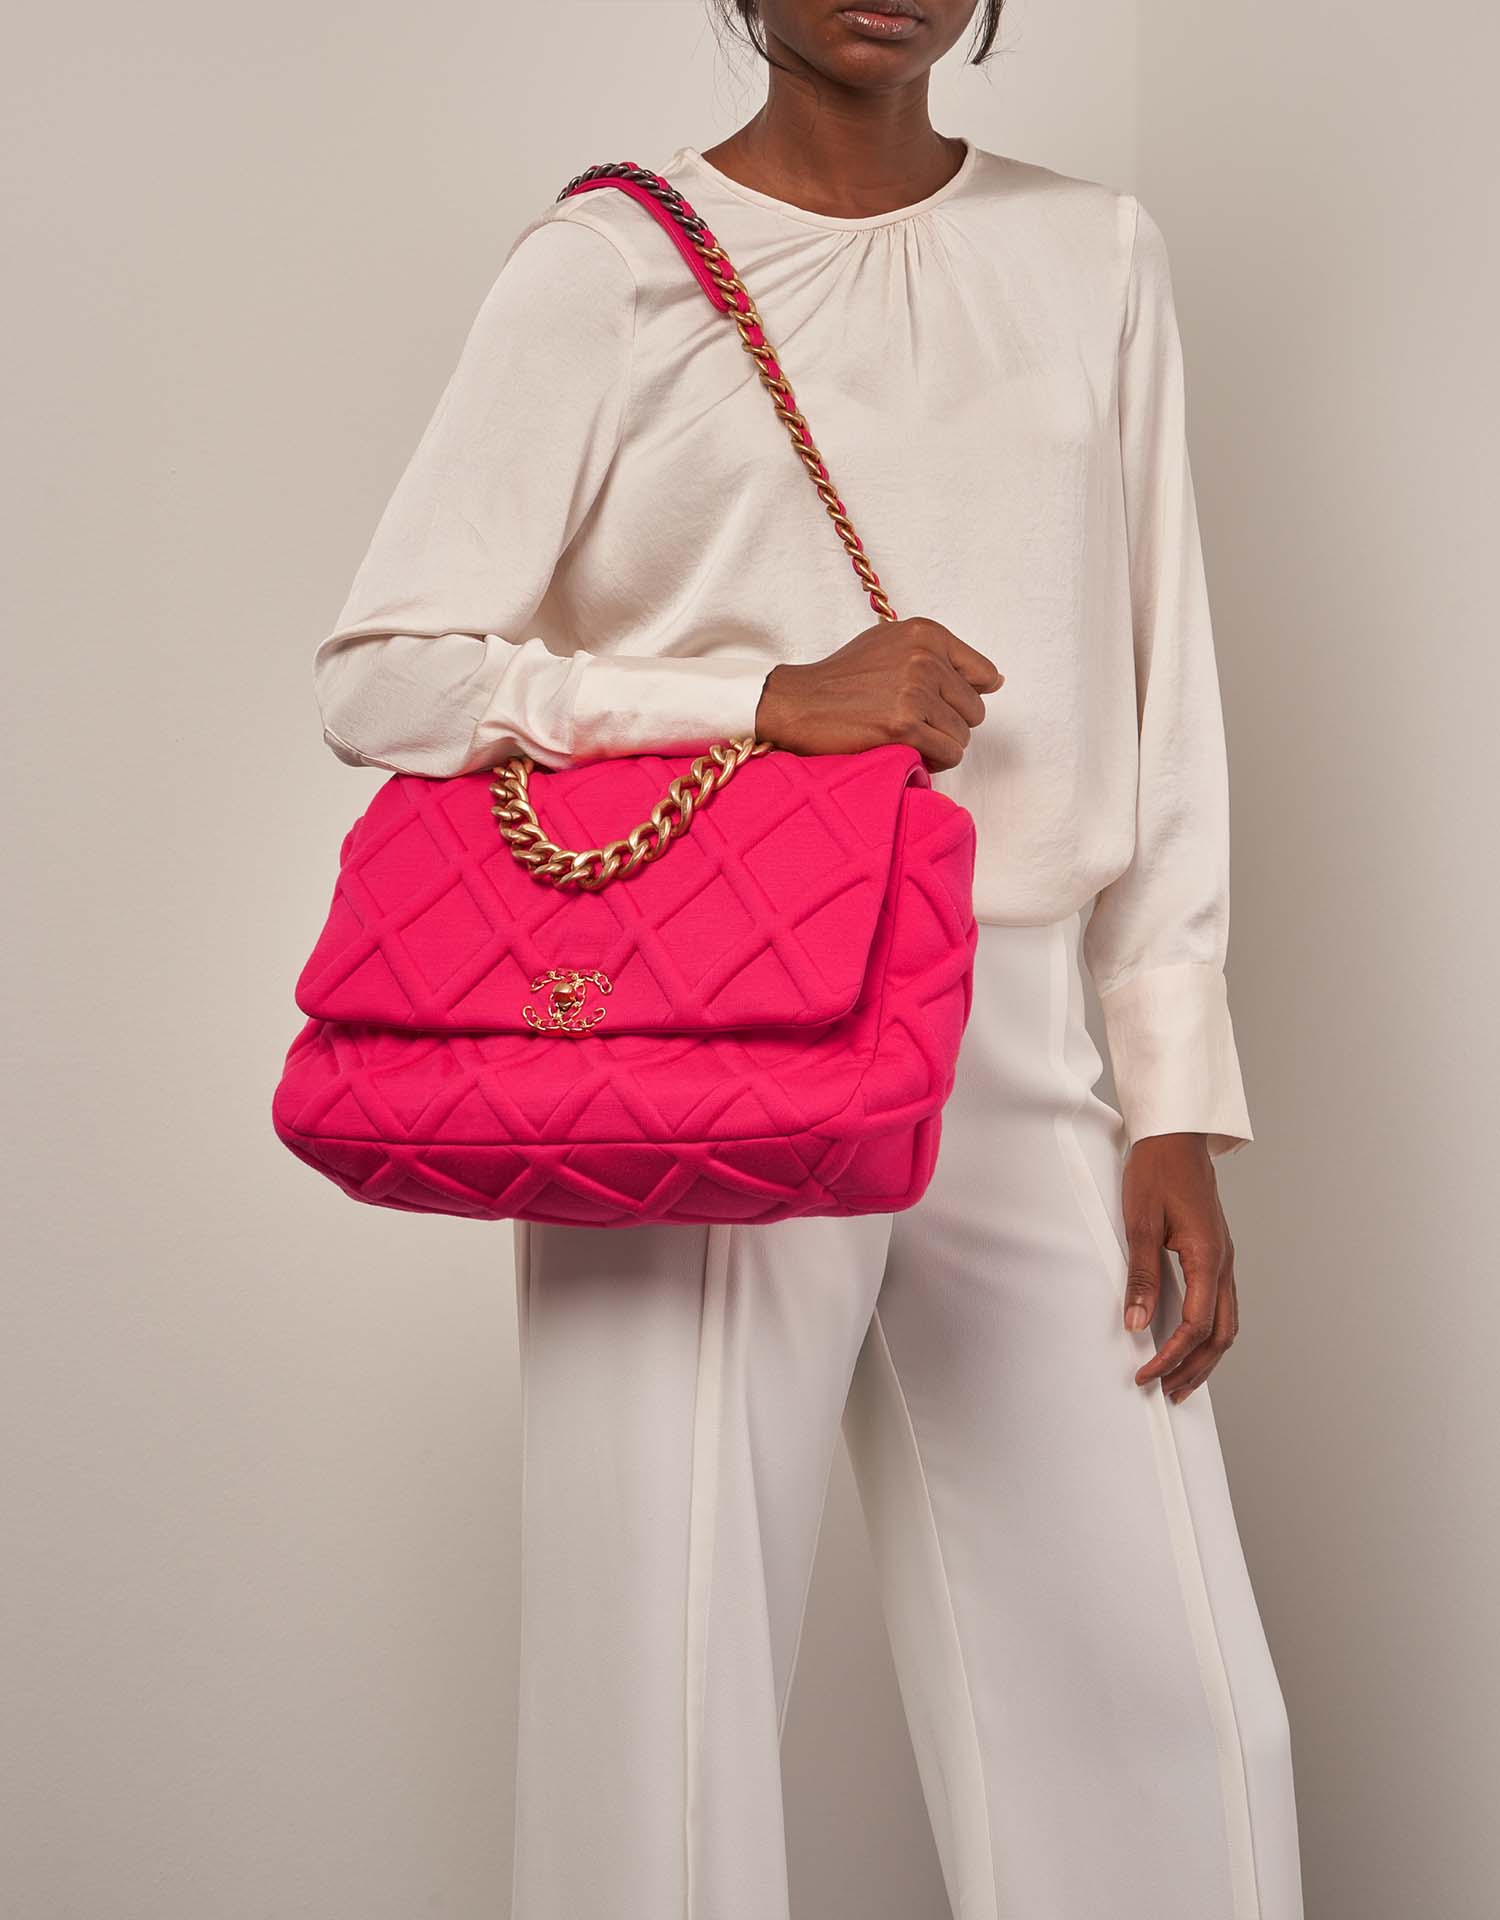 Chanel 19 MaxiFlapBag HotPink auf Model | Verkaufen Sie Ihre Designer-Tasche auf Saclab.com